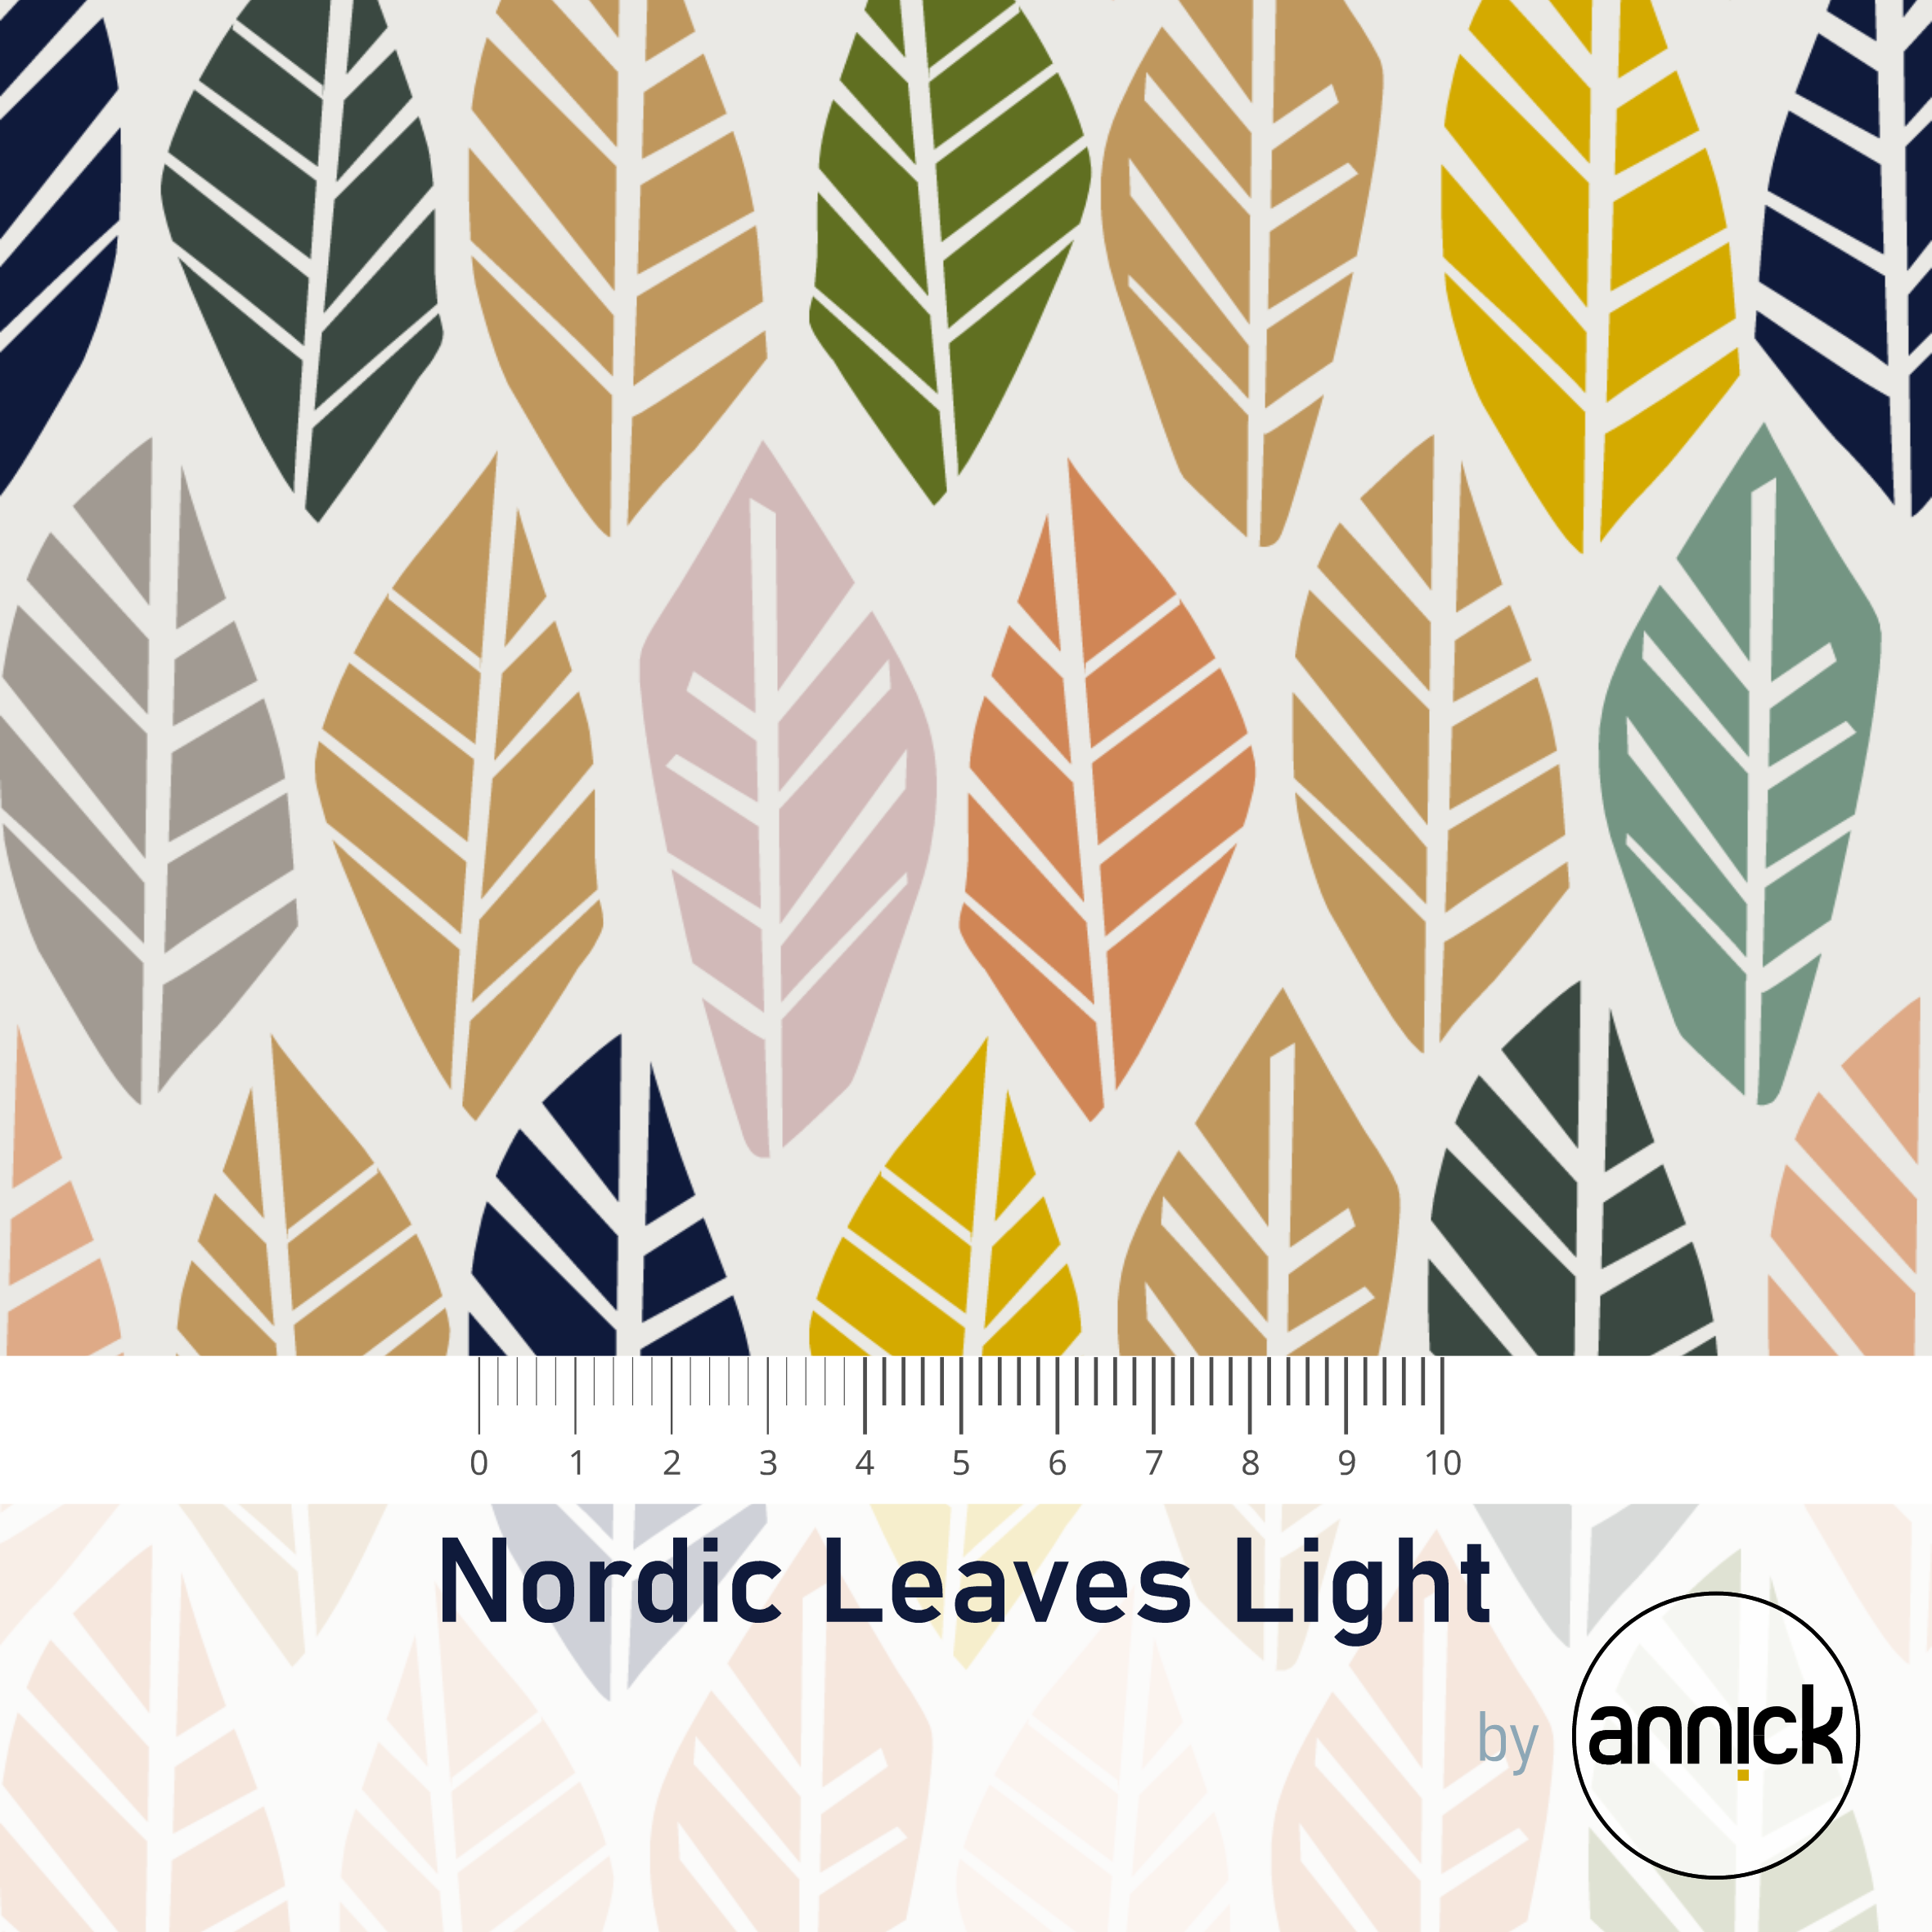 Nordic Leaves Light